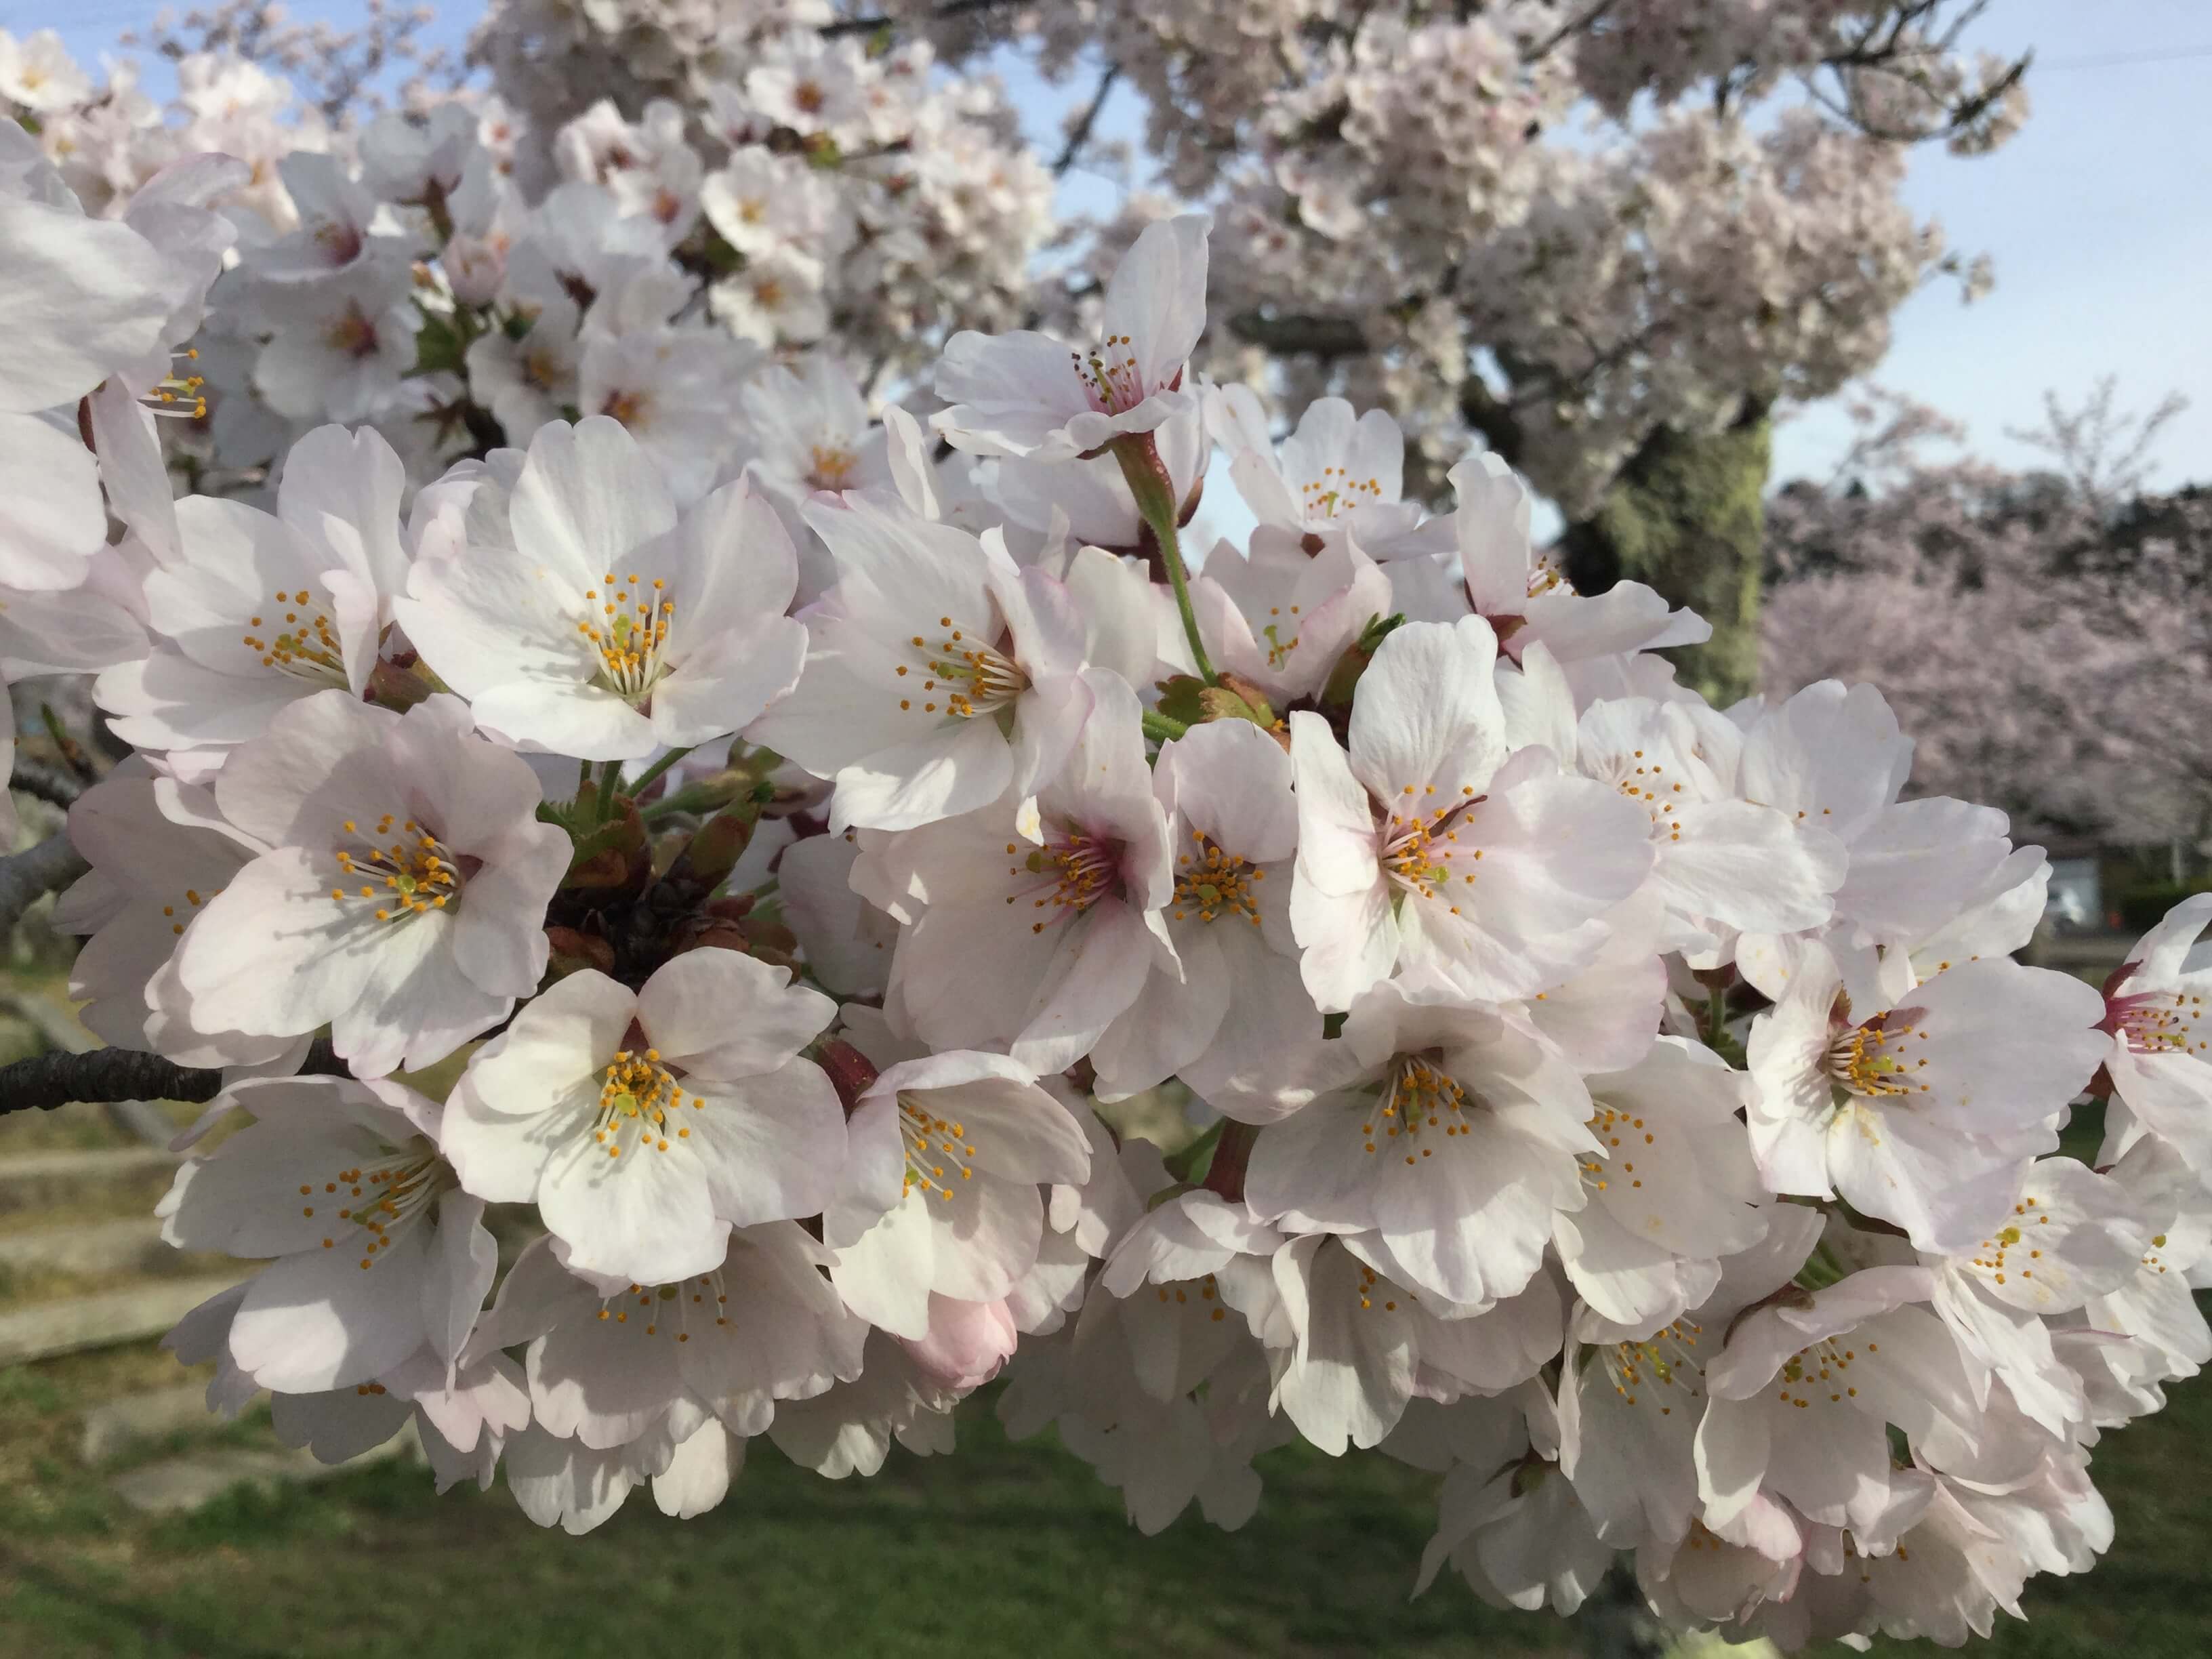 【高槻市の花見スポット】摂津峡公園の桜広場。アクセスとおすすめの時間帯。